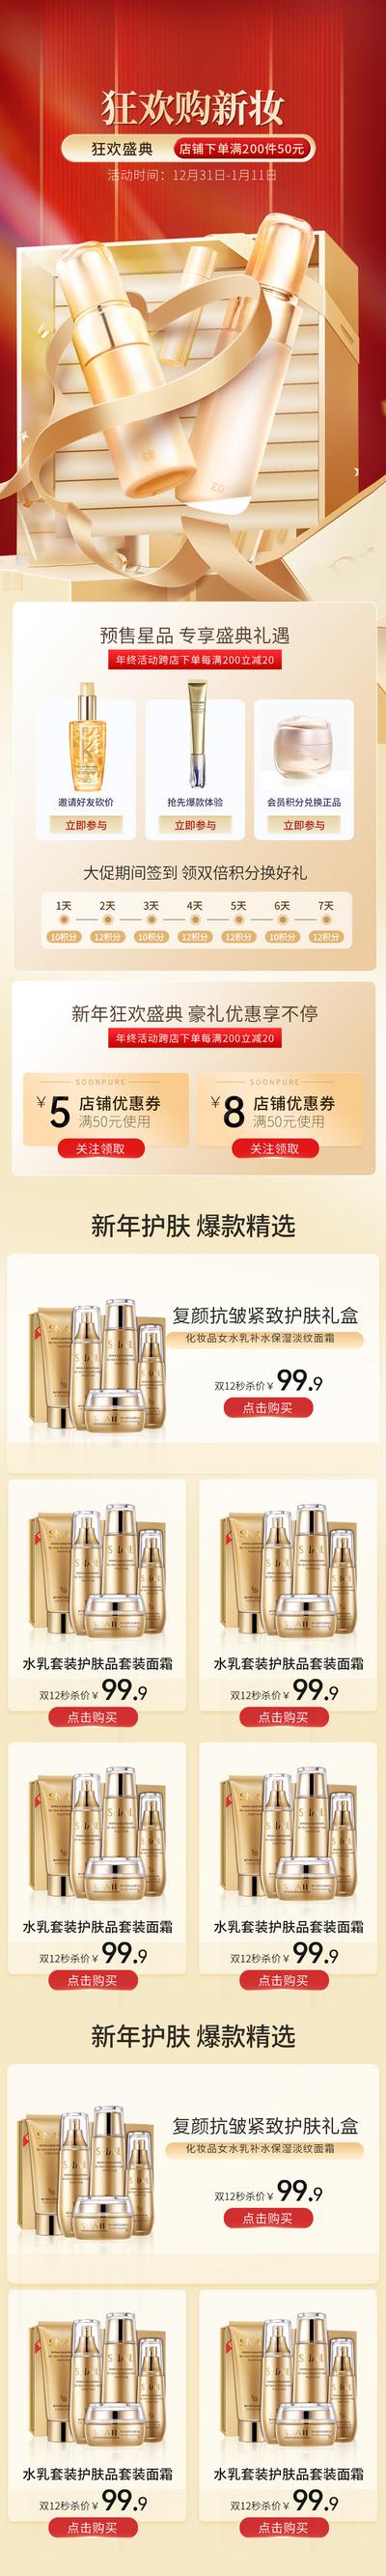 南门网 广告 海报 电商 化妆品 美妆 新年 新妆 首页app 详情页 专题